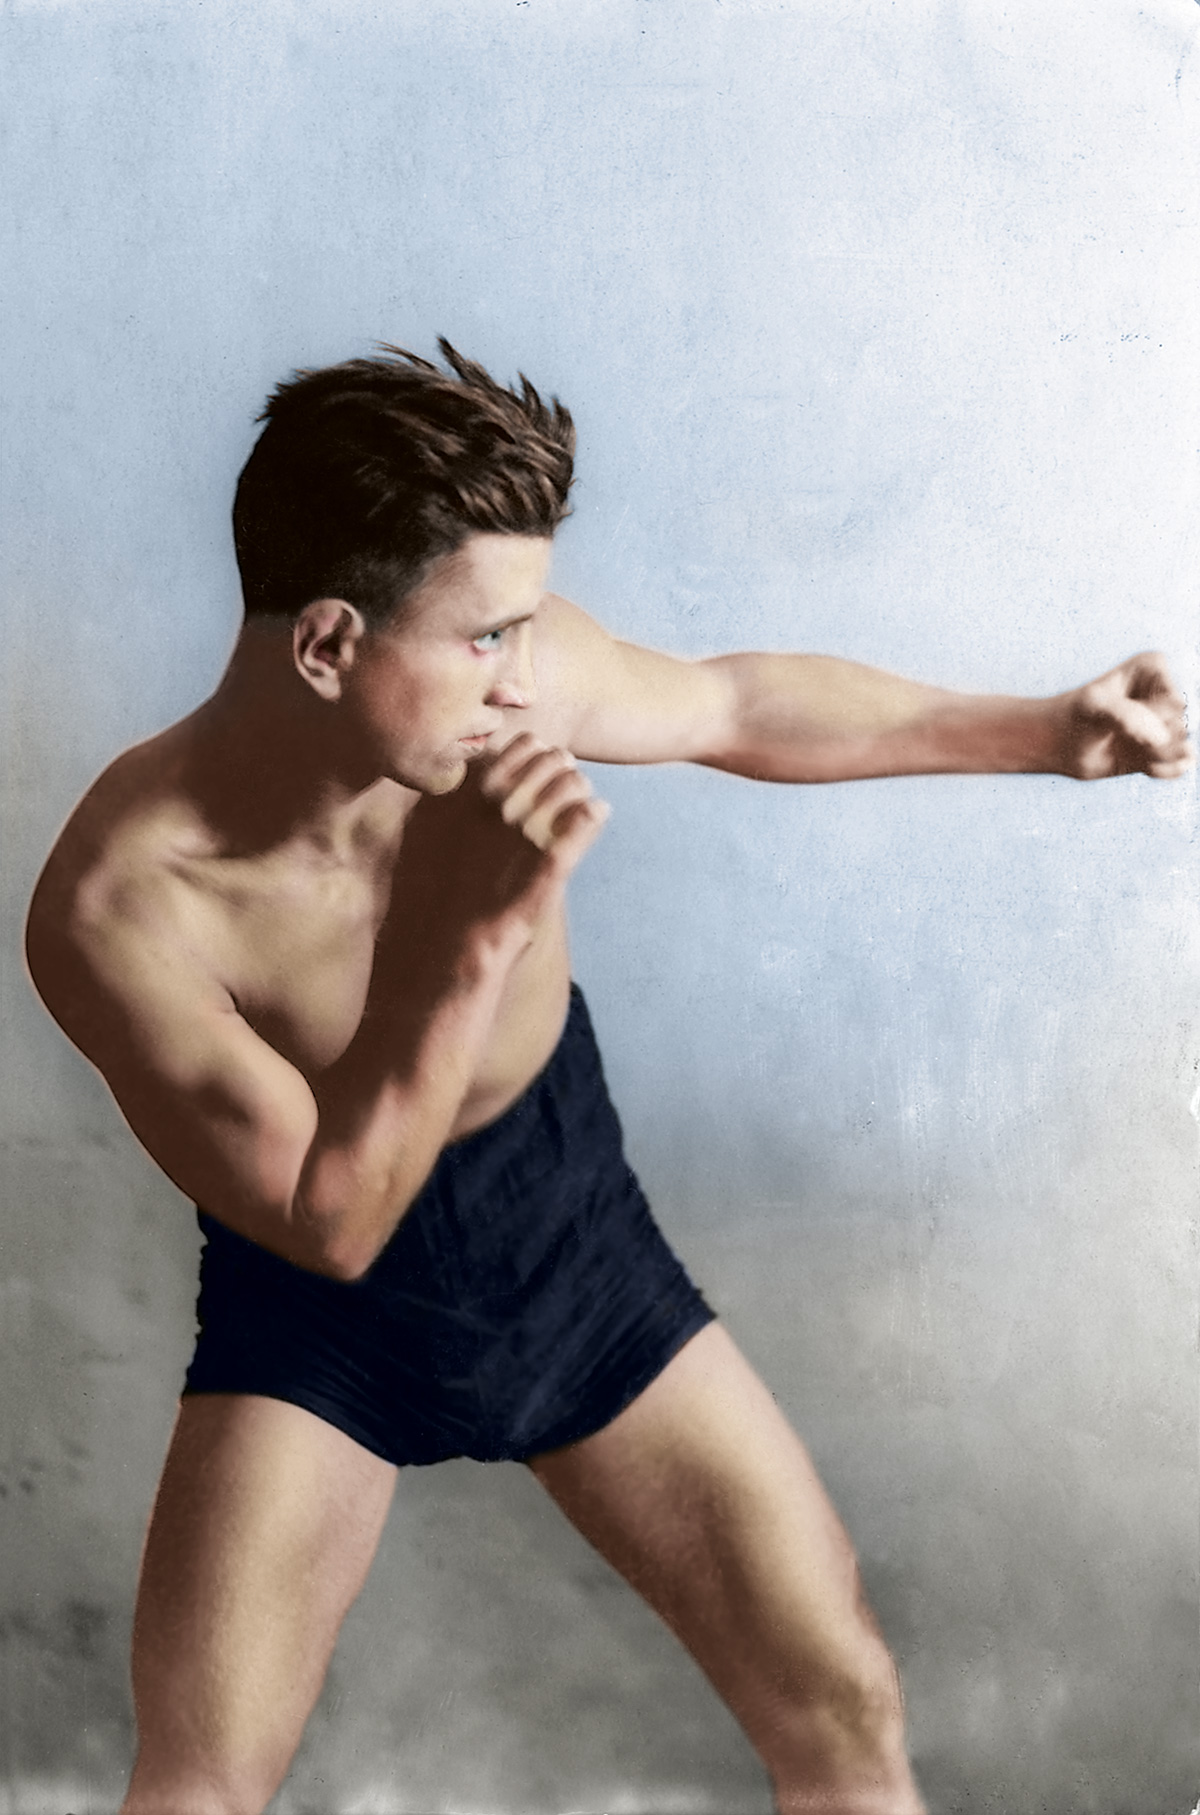 Każdy mężczyzna powinien umieć się boksować – Zygfryd Wende, lata 20. XX w. Źródło: Muzeum Sportu i Turystyki